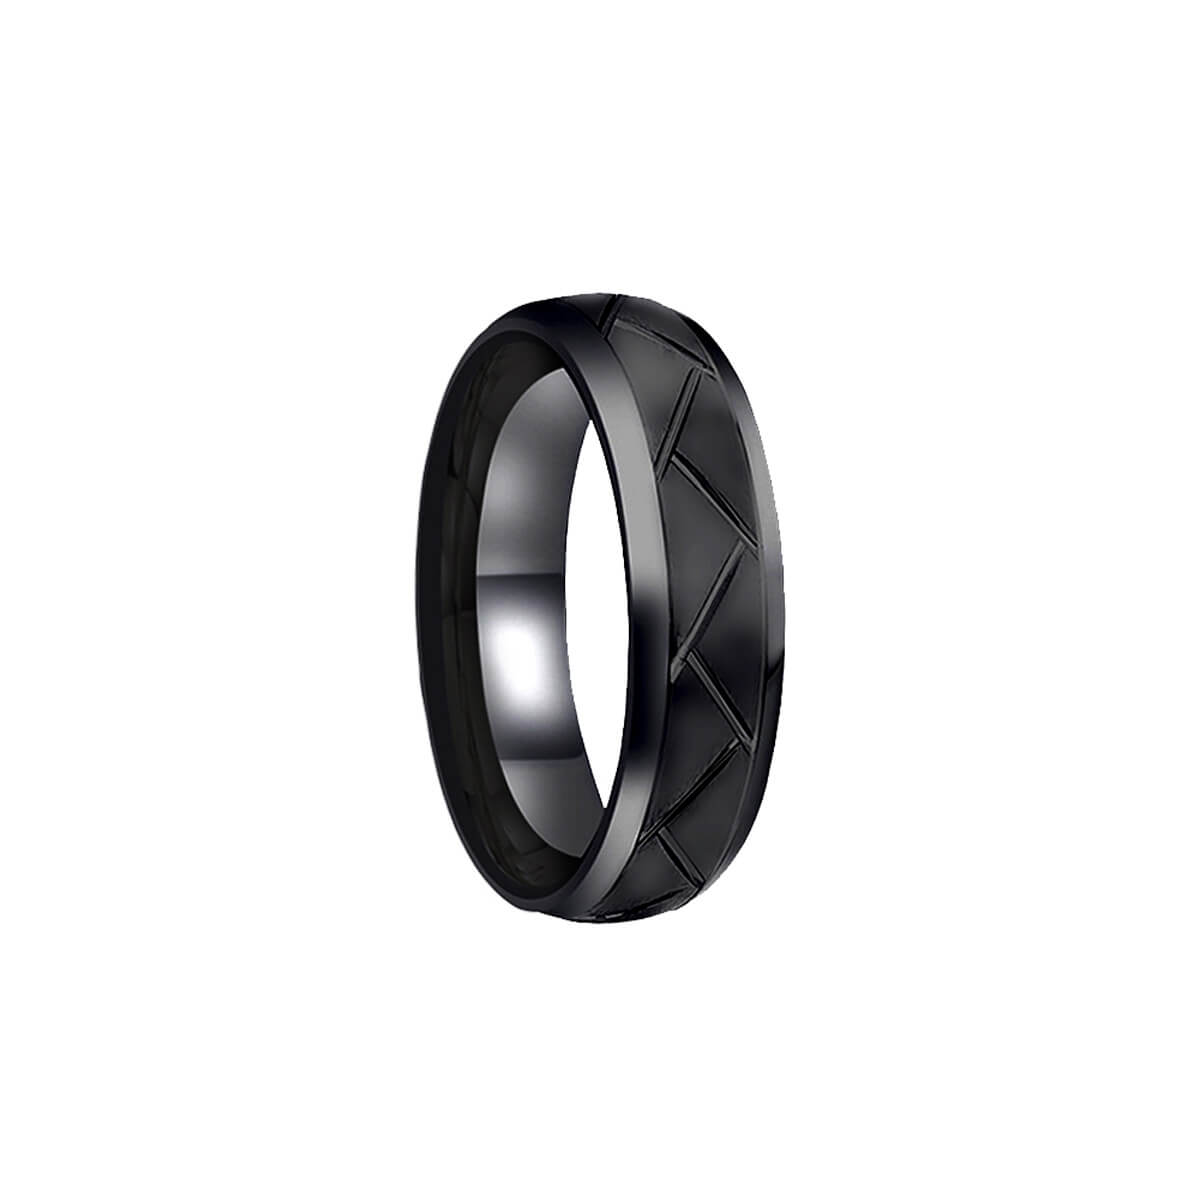 Textured black steel ring 8mm (steel 316L)